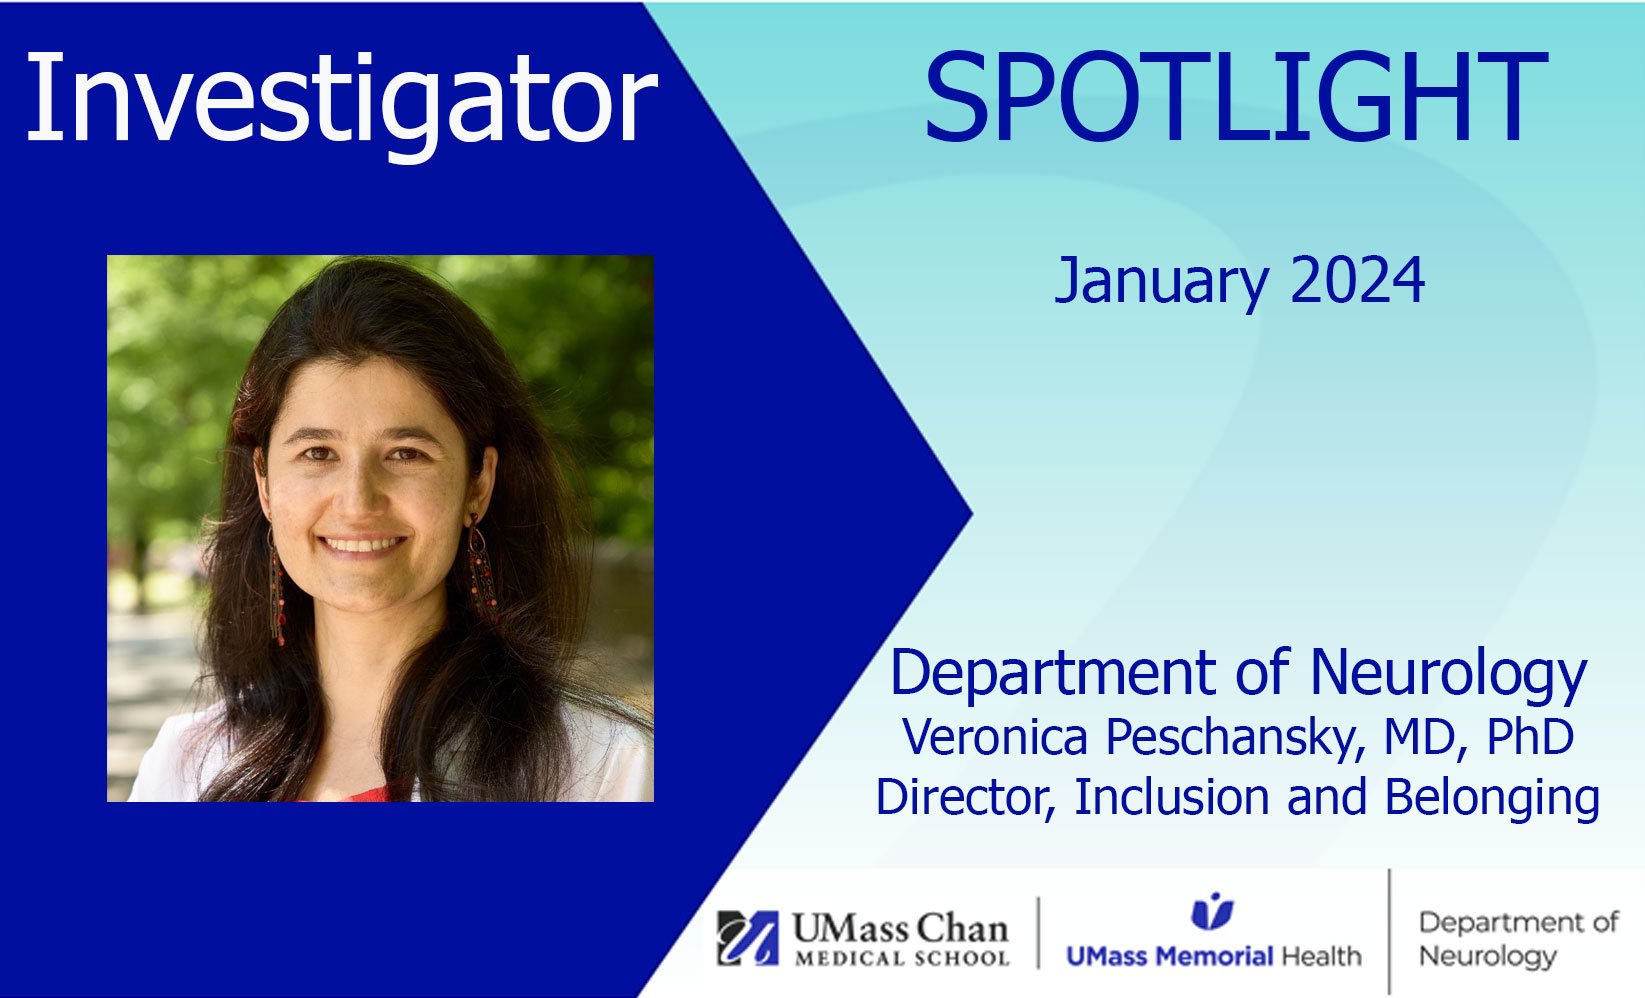 Veronica Peschansky, MD, PhD, January 2024 Investigator Spotlight